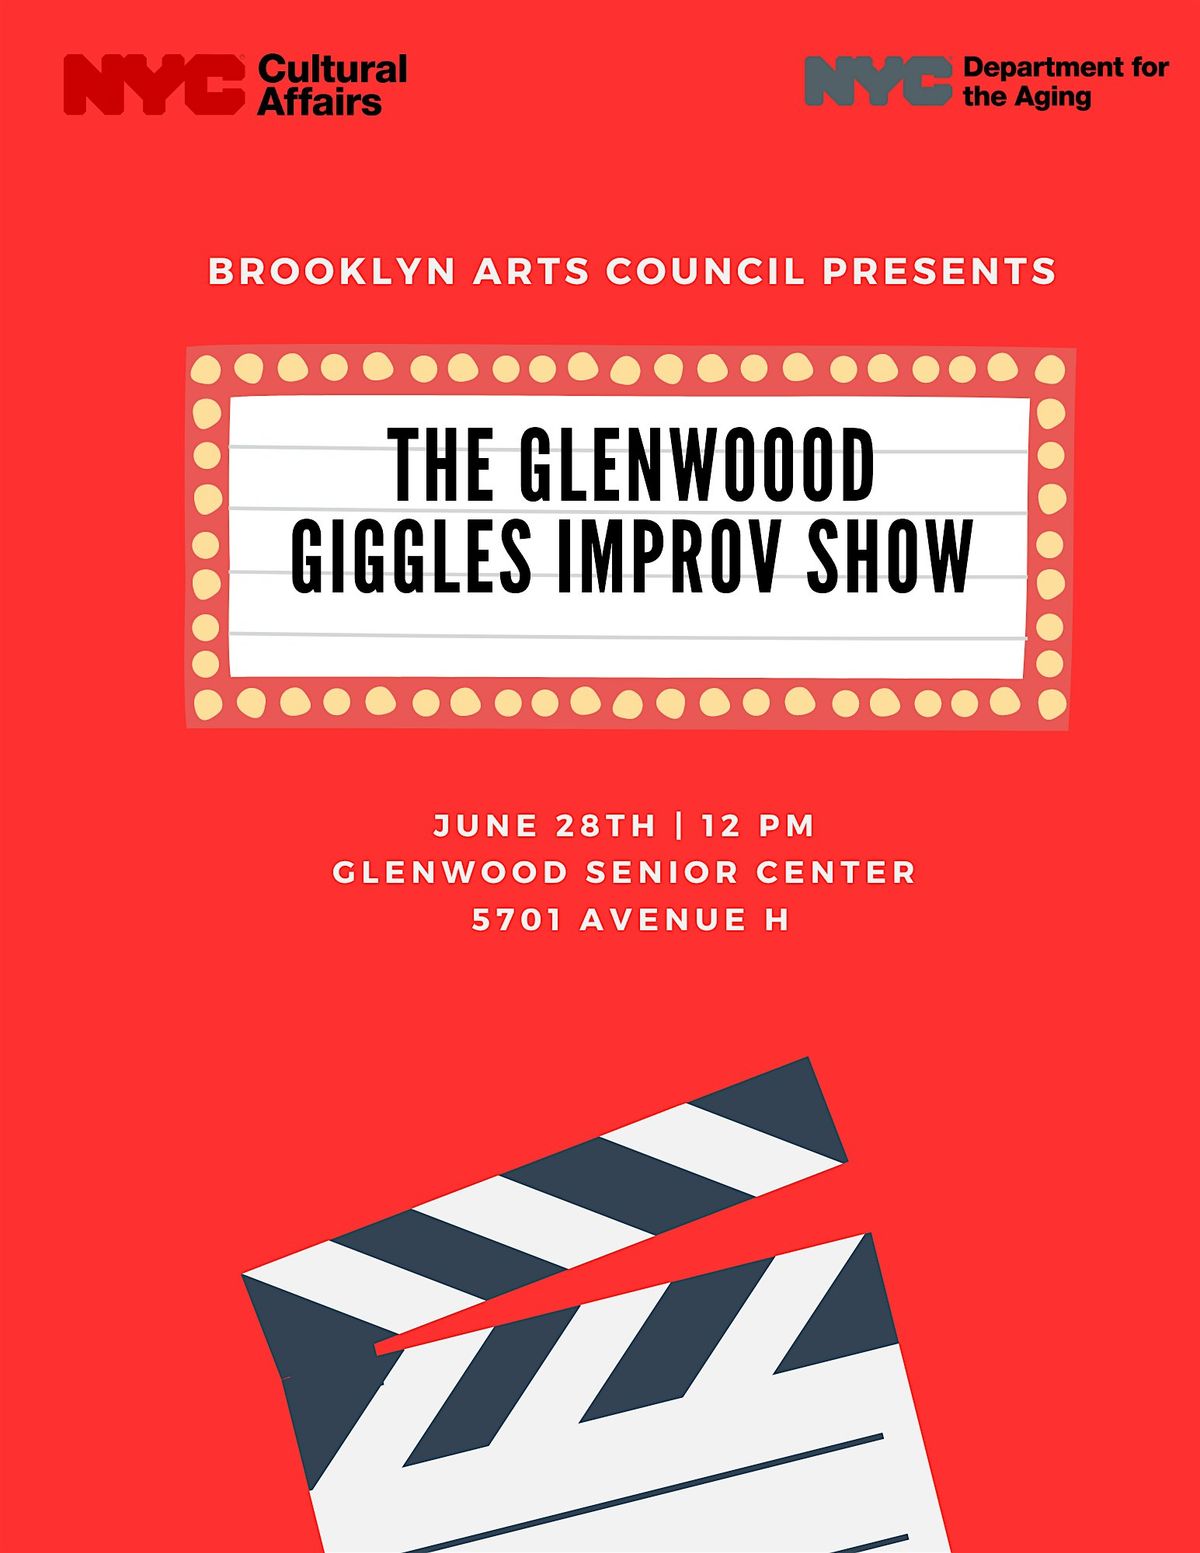 The Glenwood Giggles Improv Show